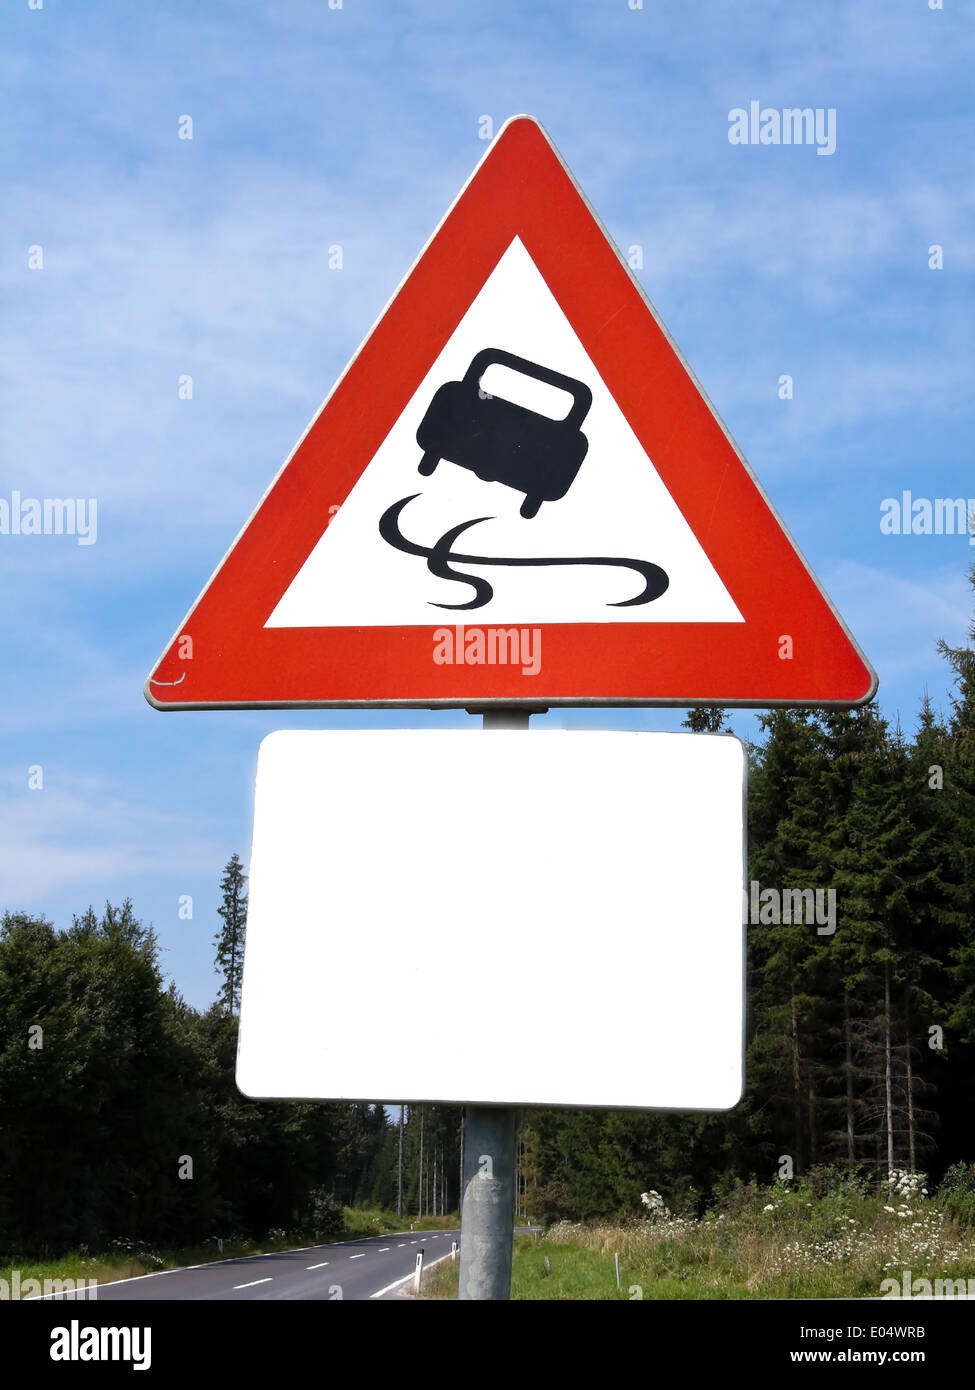 Warning catapult danger with smooth street, Warnung Schleudergefahr bei glatter Strasse Stock Photo